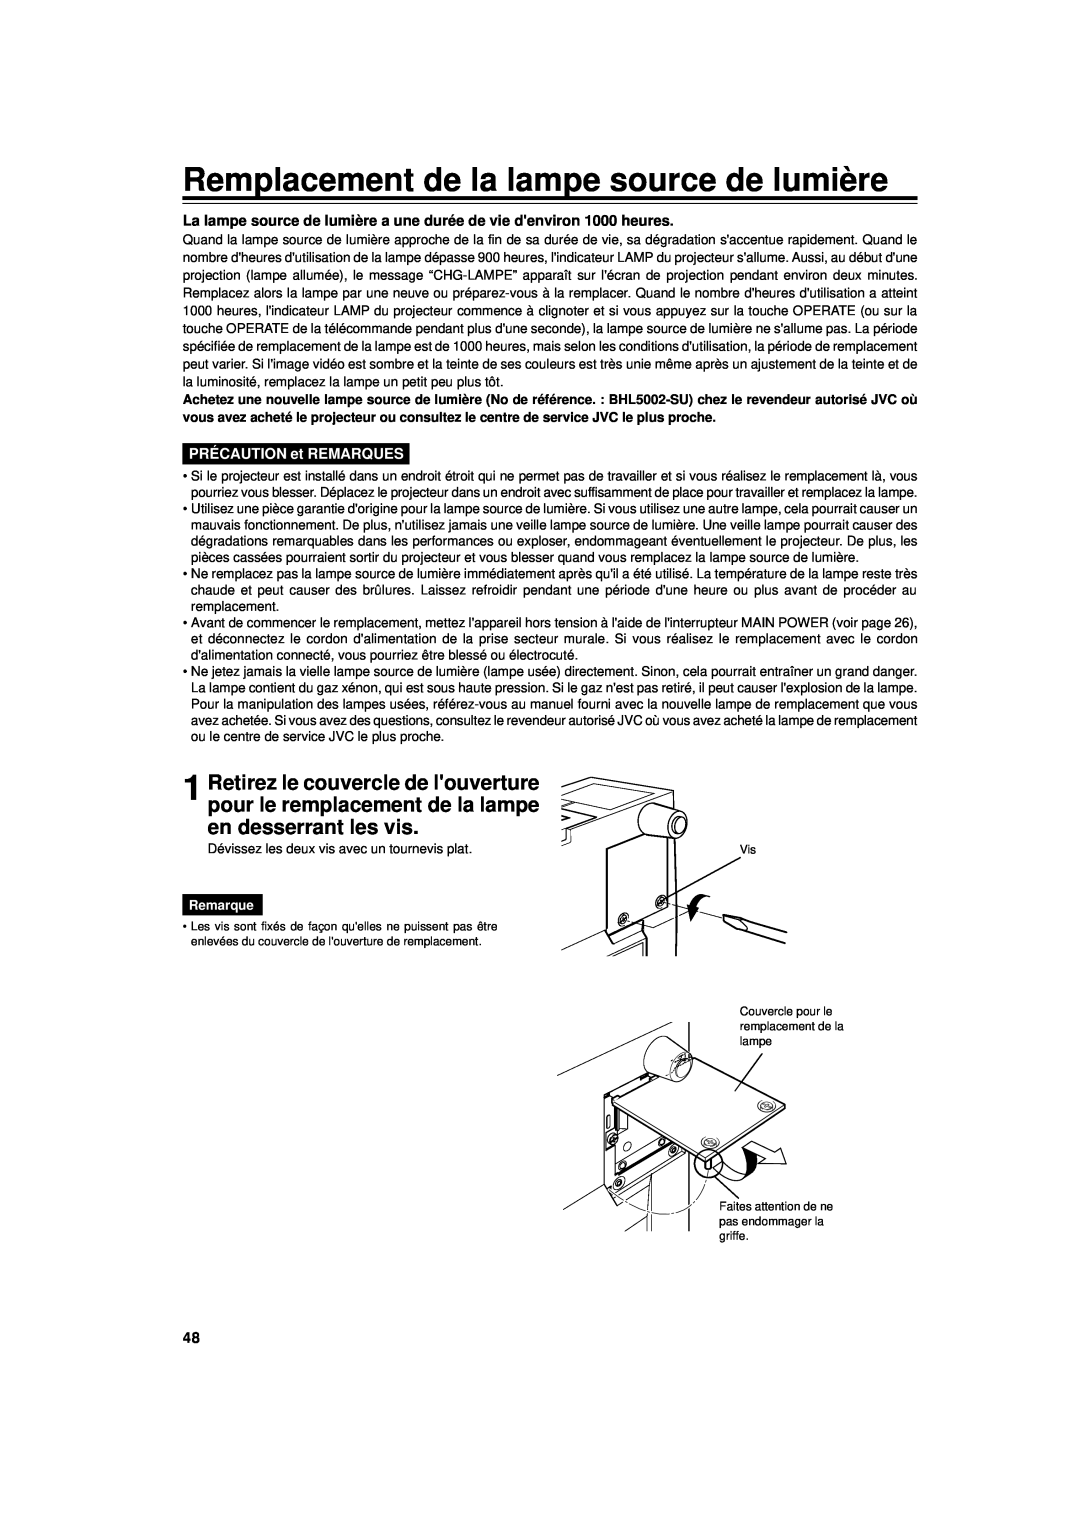 JVC DLA-G11U manual Remplacement de la lampe source de lumière, PRÉCAUTION et REMARQUES, Remarque 